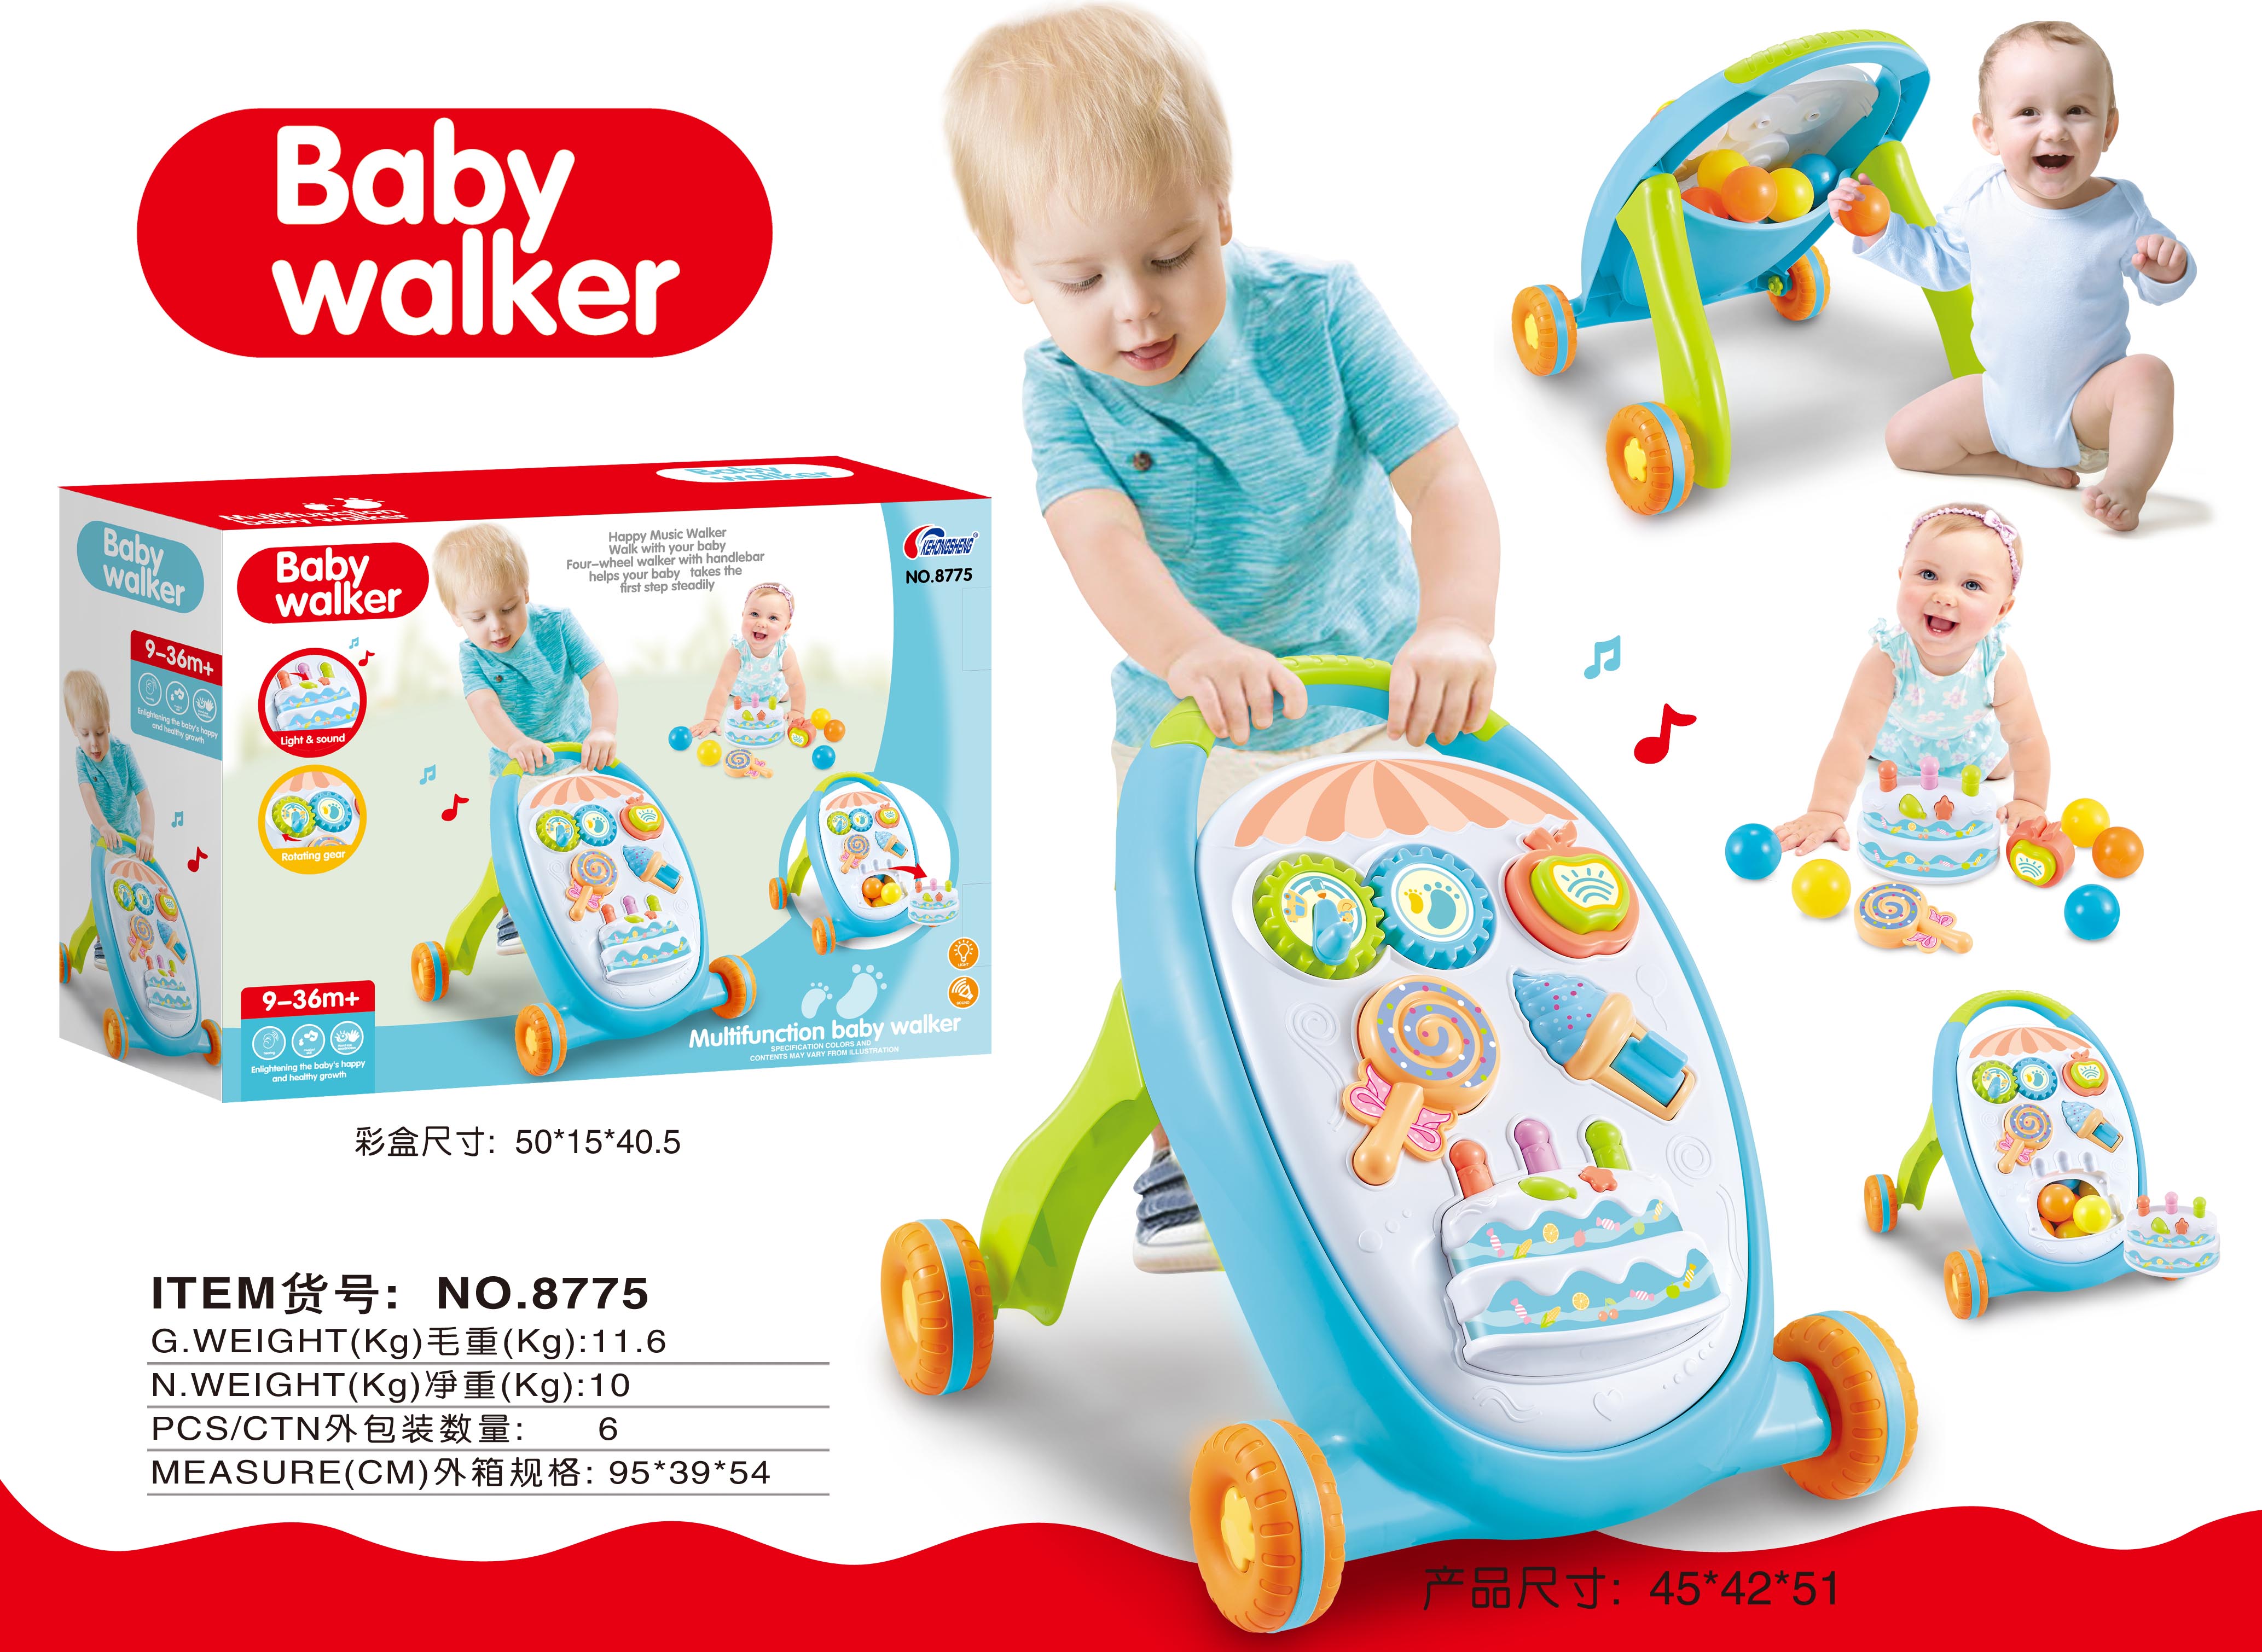 婴儿推车/学步车/玩具产品图